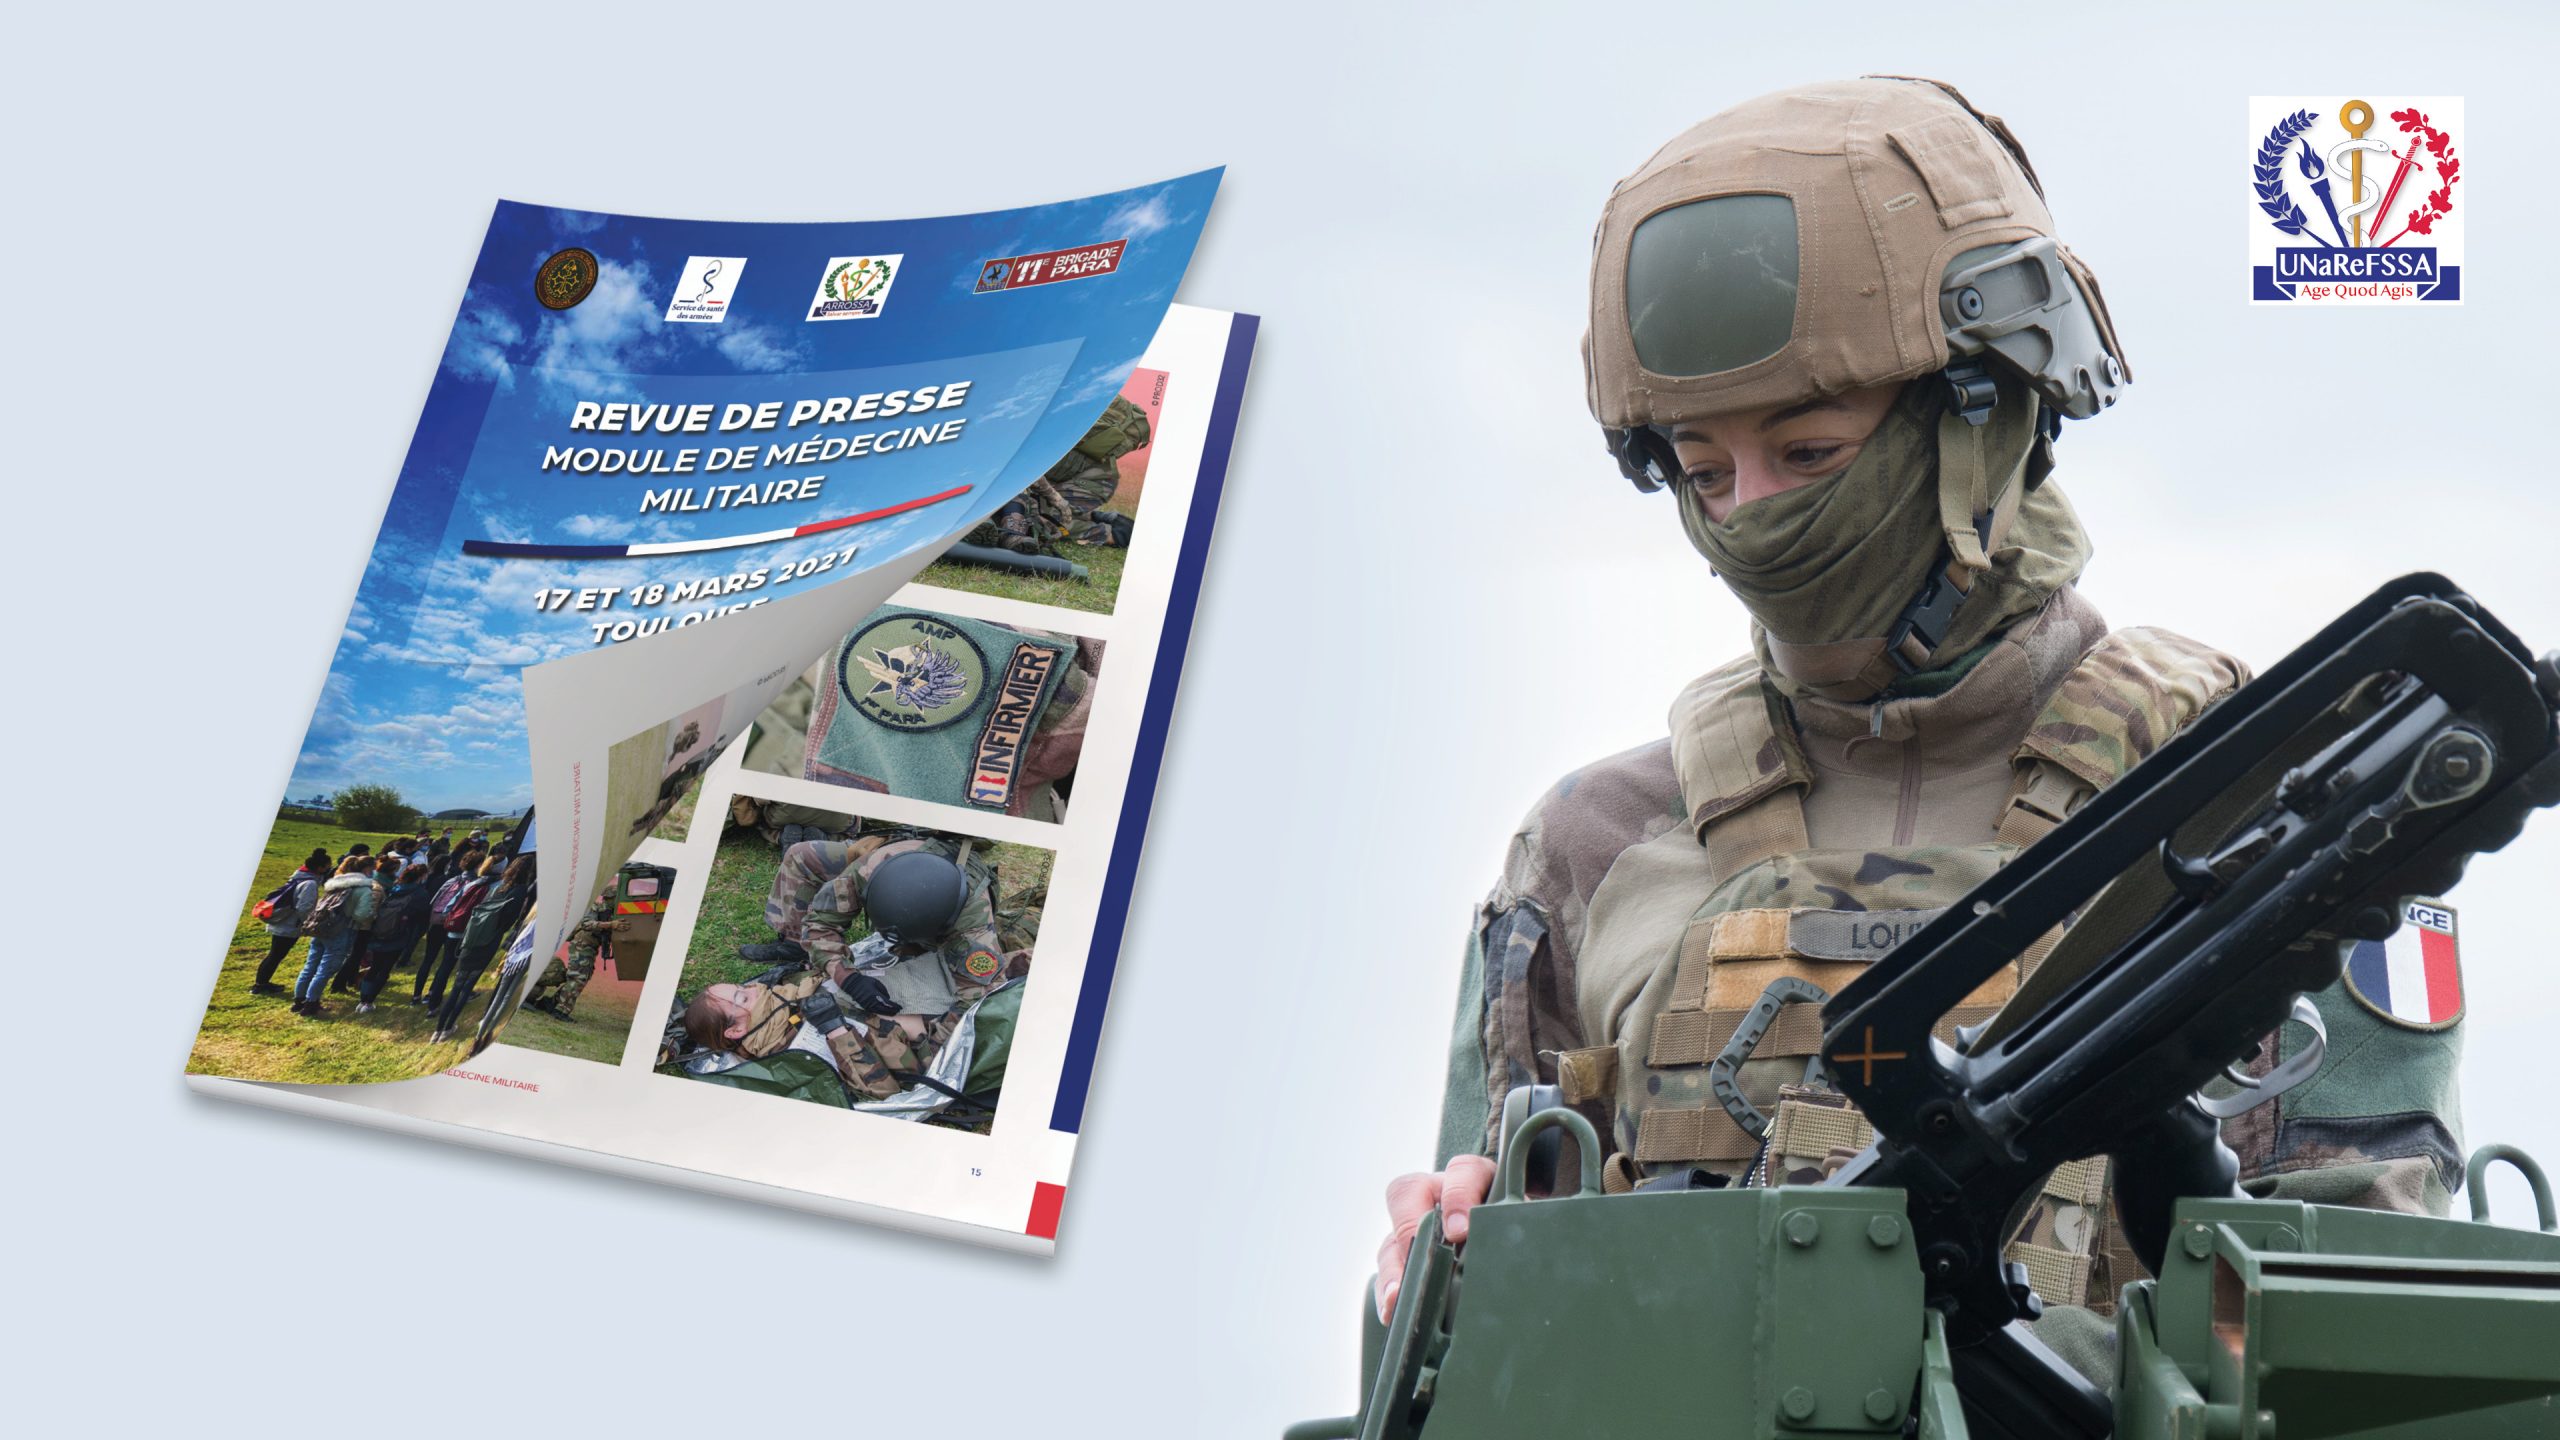 Réalisation de la revue de presse suite au module de médecine militaire de Toulouse organisé par l'UNaRéFSSA